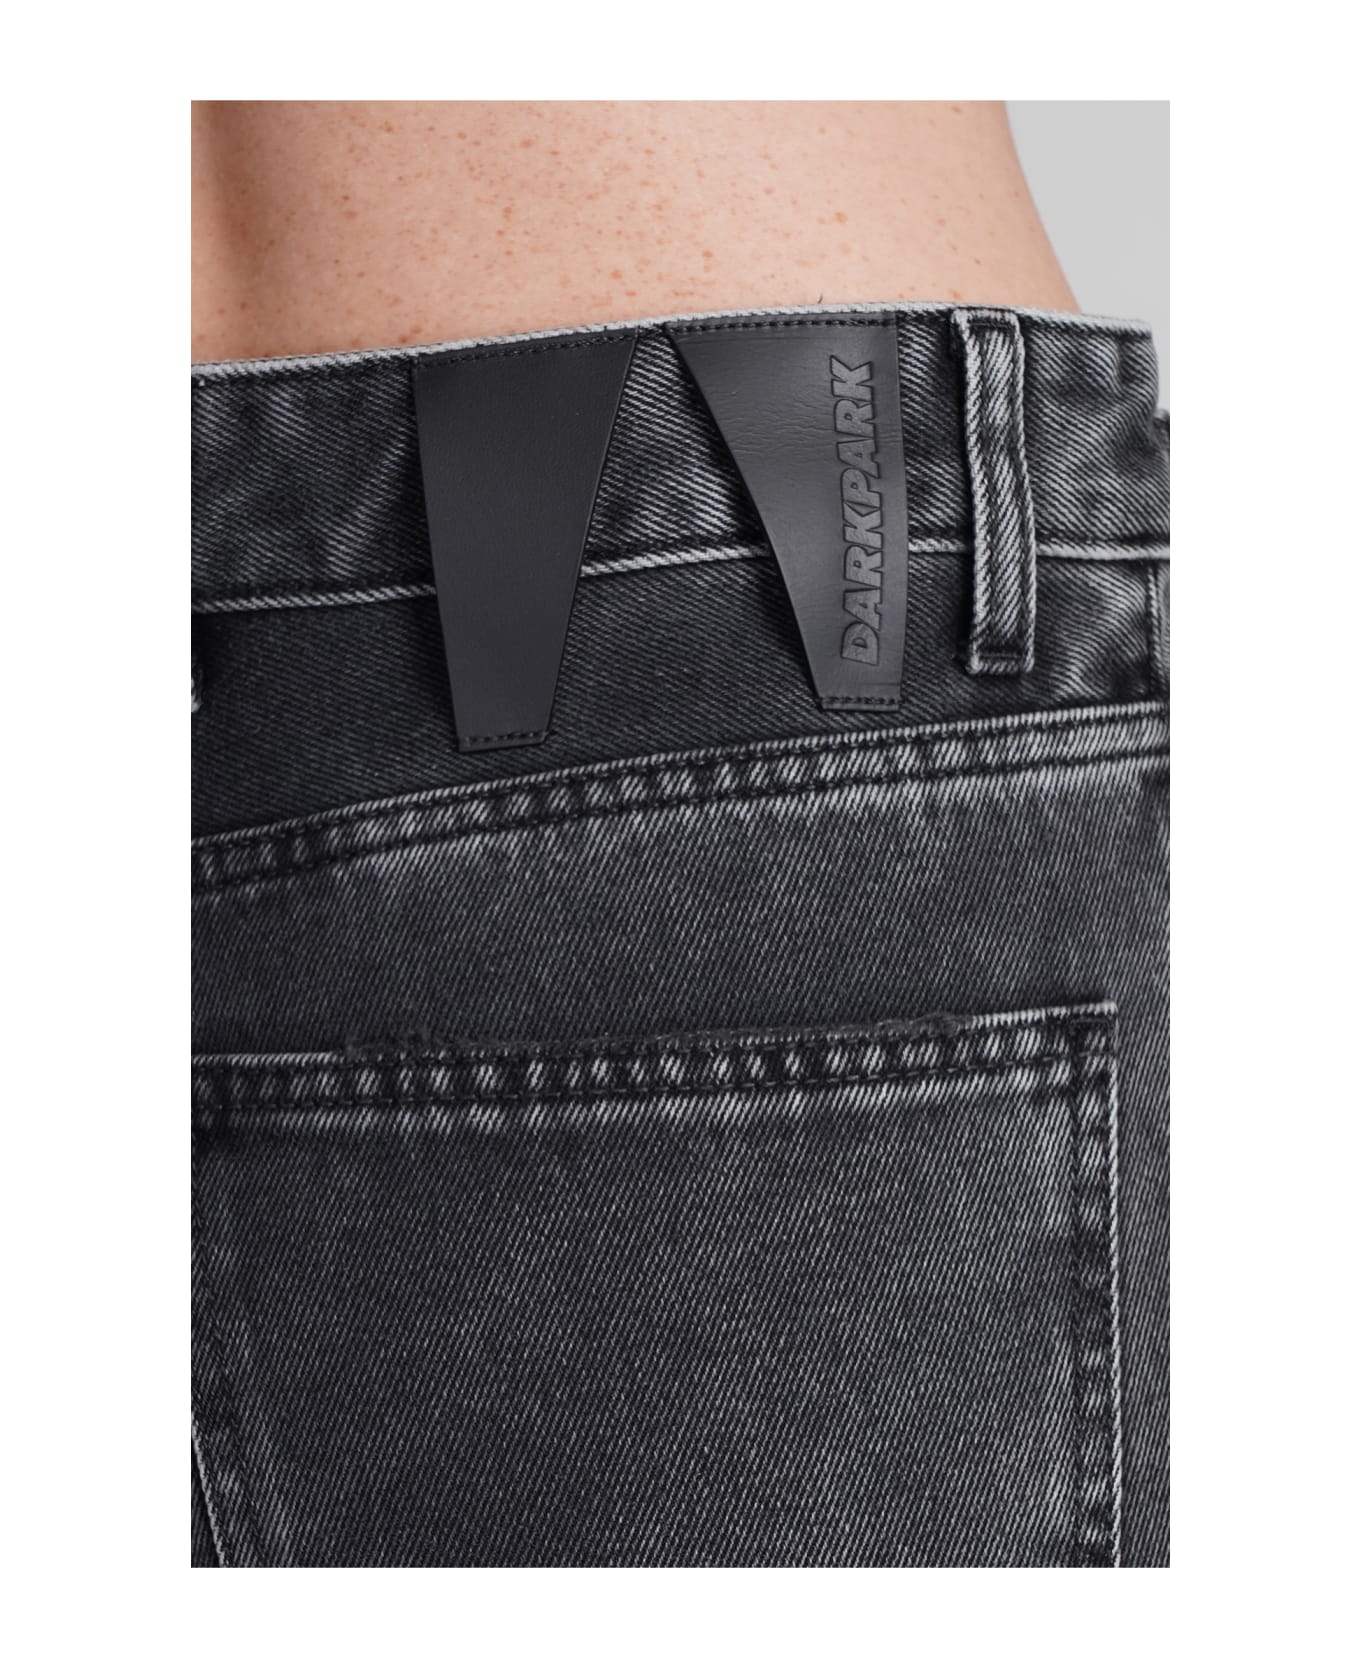 DARKPARK Karen Jeans In Black Cotton - black ボトムス